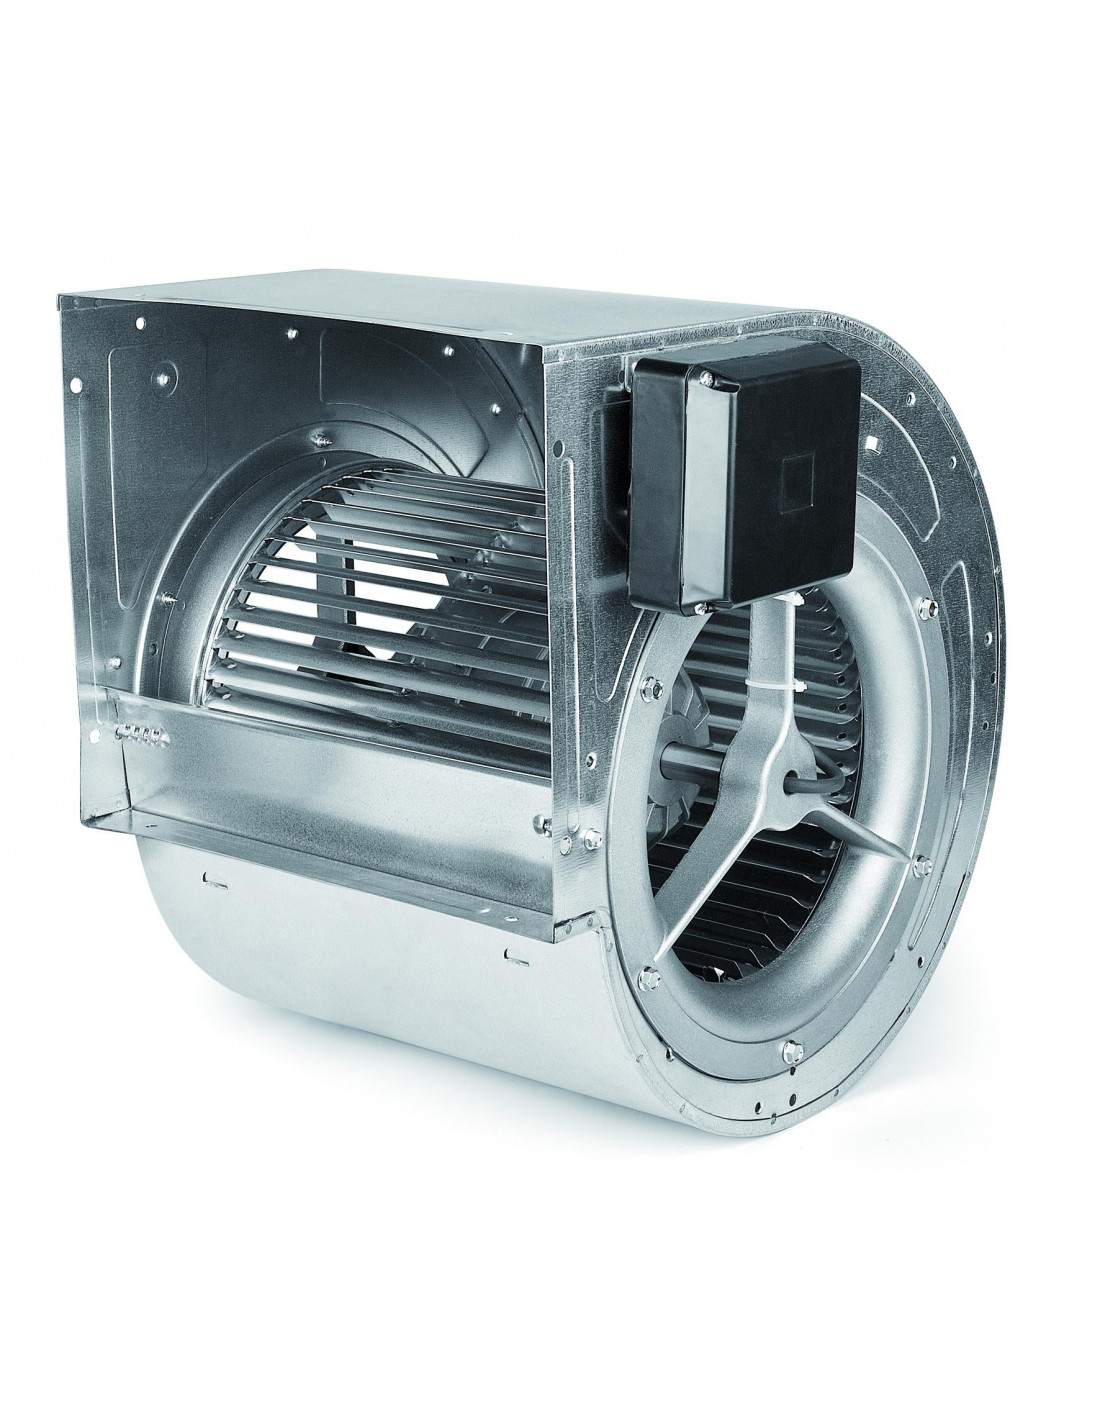 Ventilateur radiateur d'eau H.P. (soufflant, 335mm, 1450m³/h) - V/A  MotorSport